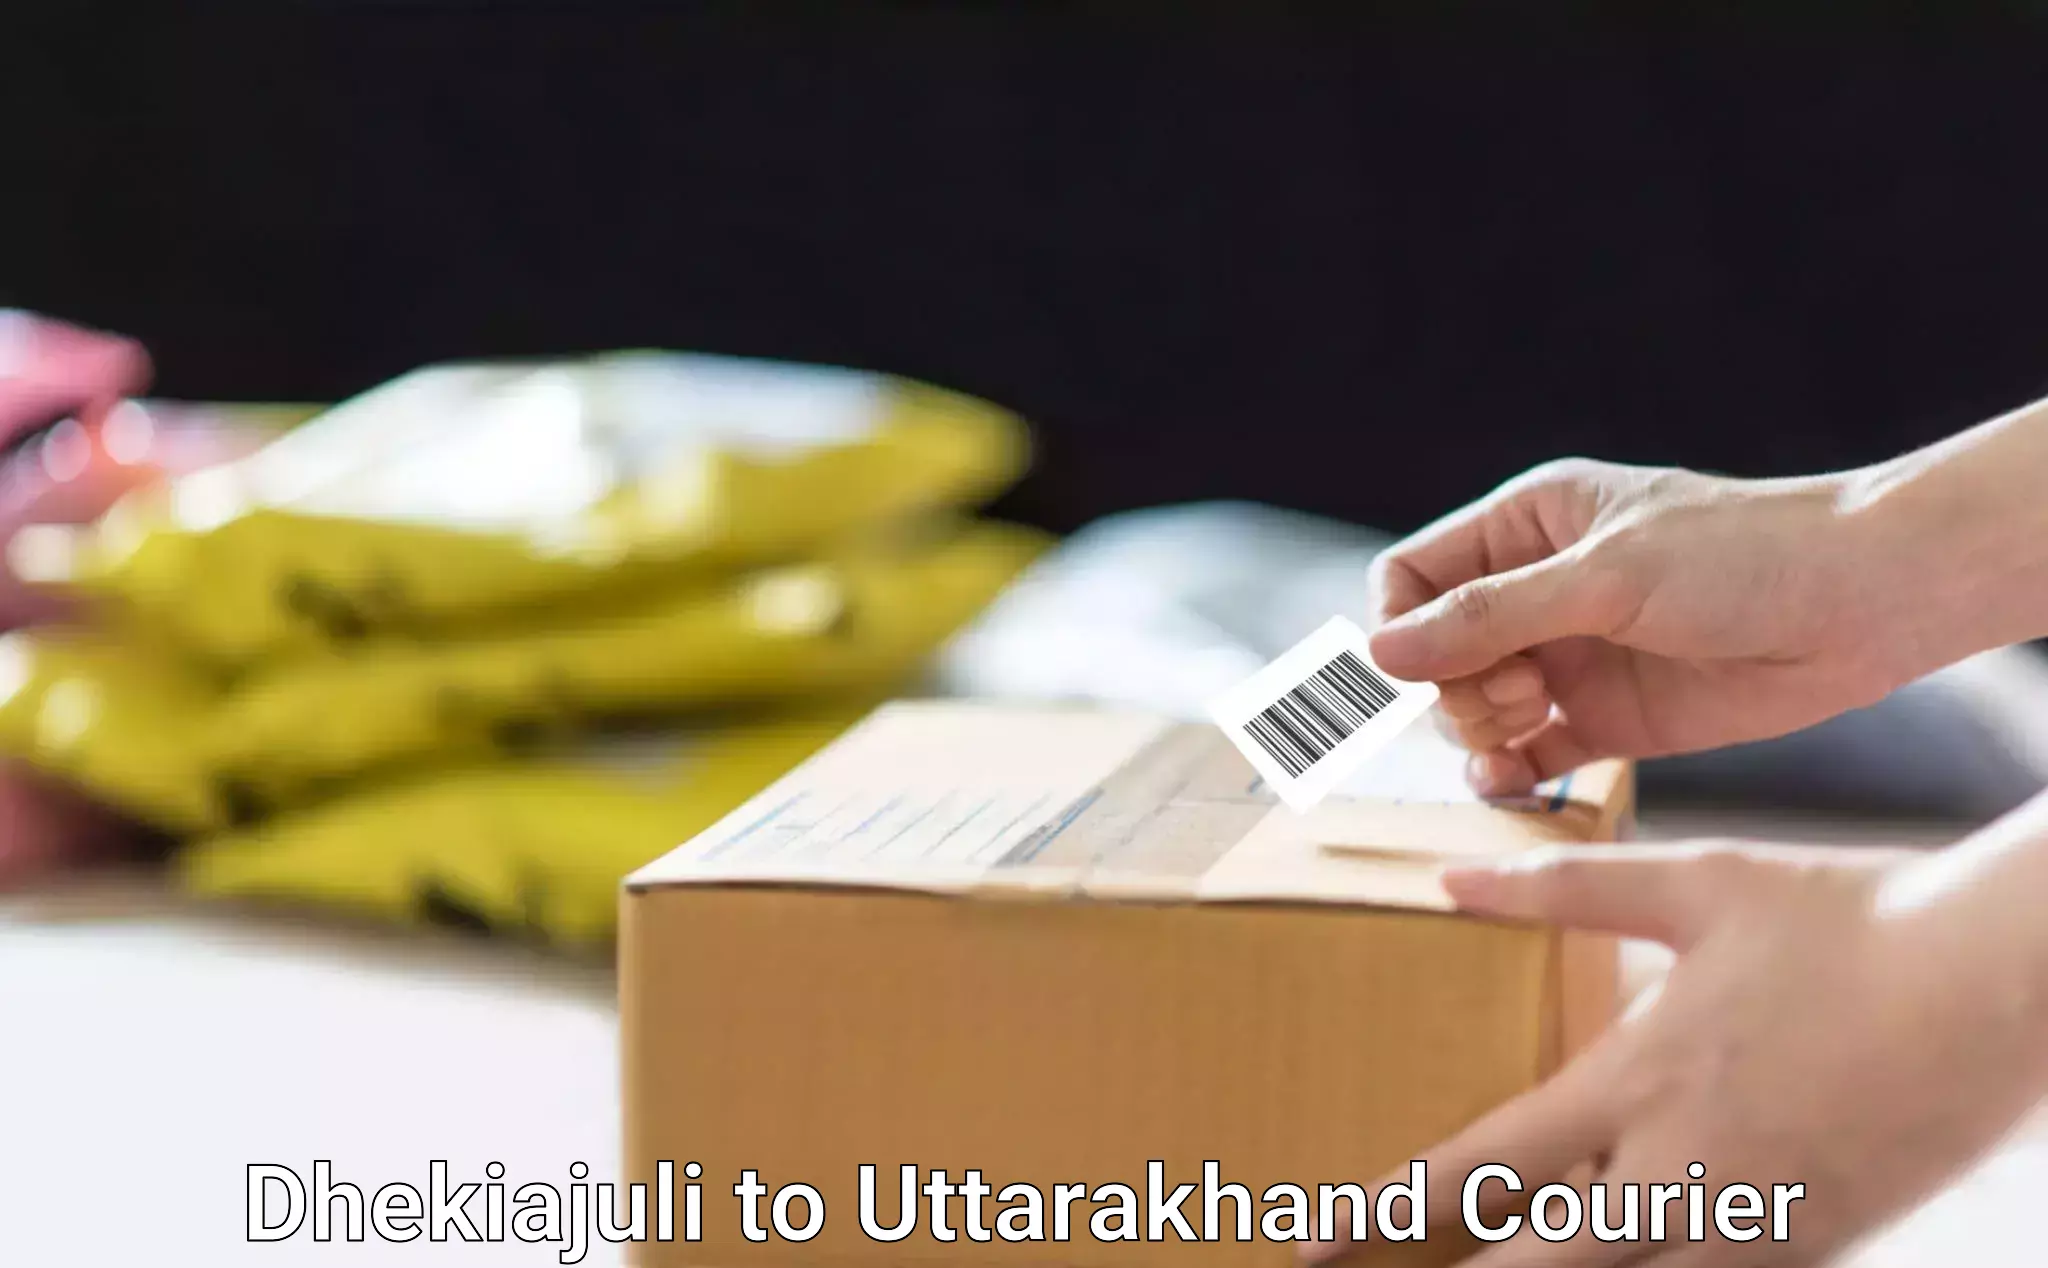 Advanced shipping services Dhekiajuli to Uttarakhand